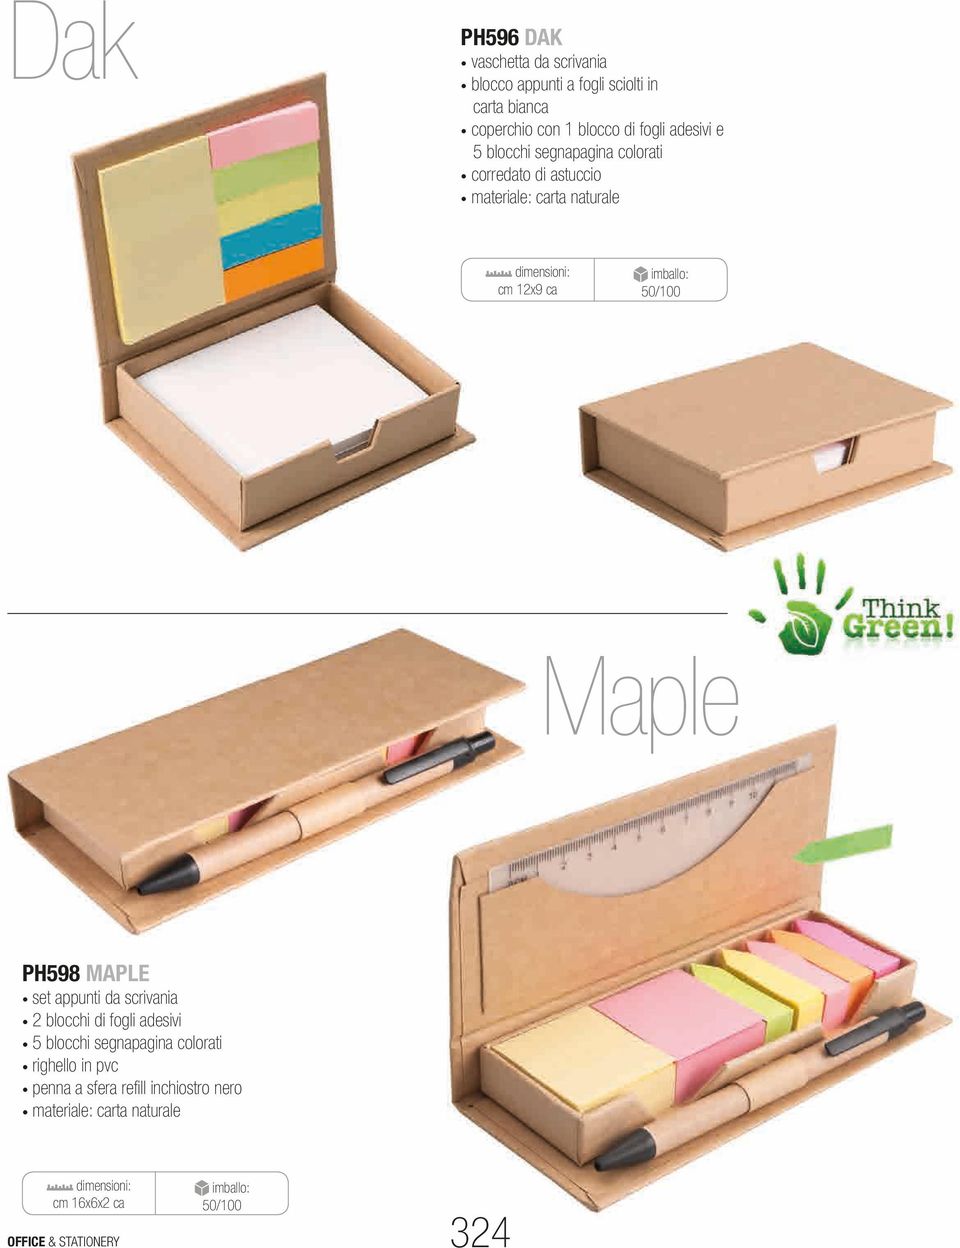 50/100 Maple PH598 MAPLE set appunti da scrivania 2 blocchi di fogli adesivi 5 blocchi segnapagina colorati